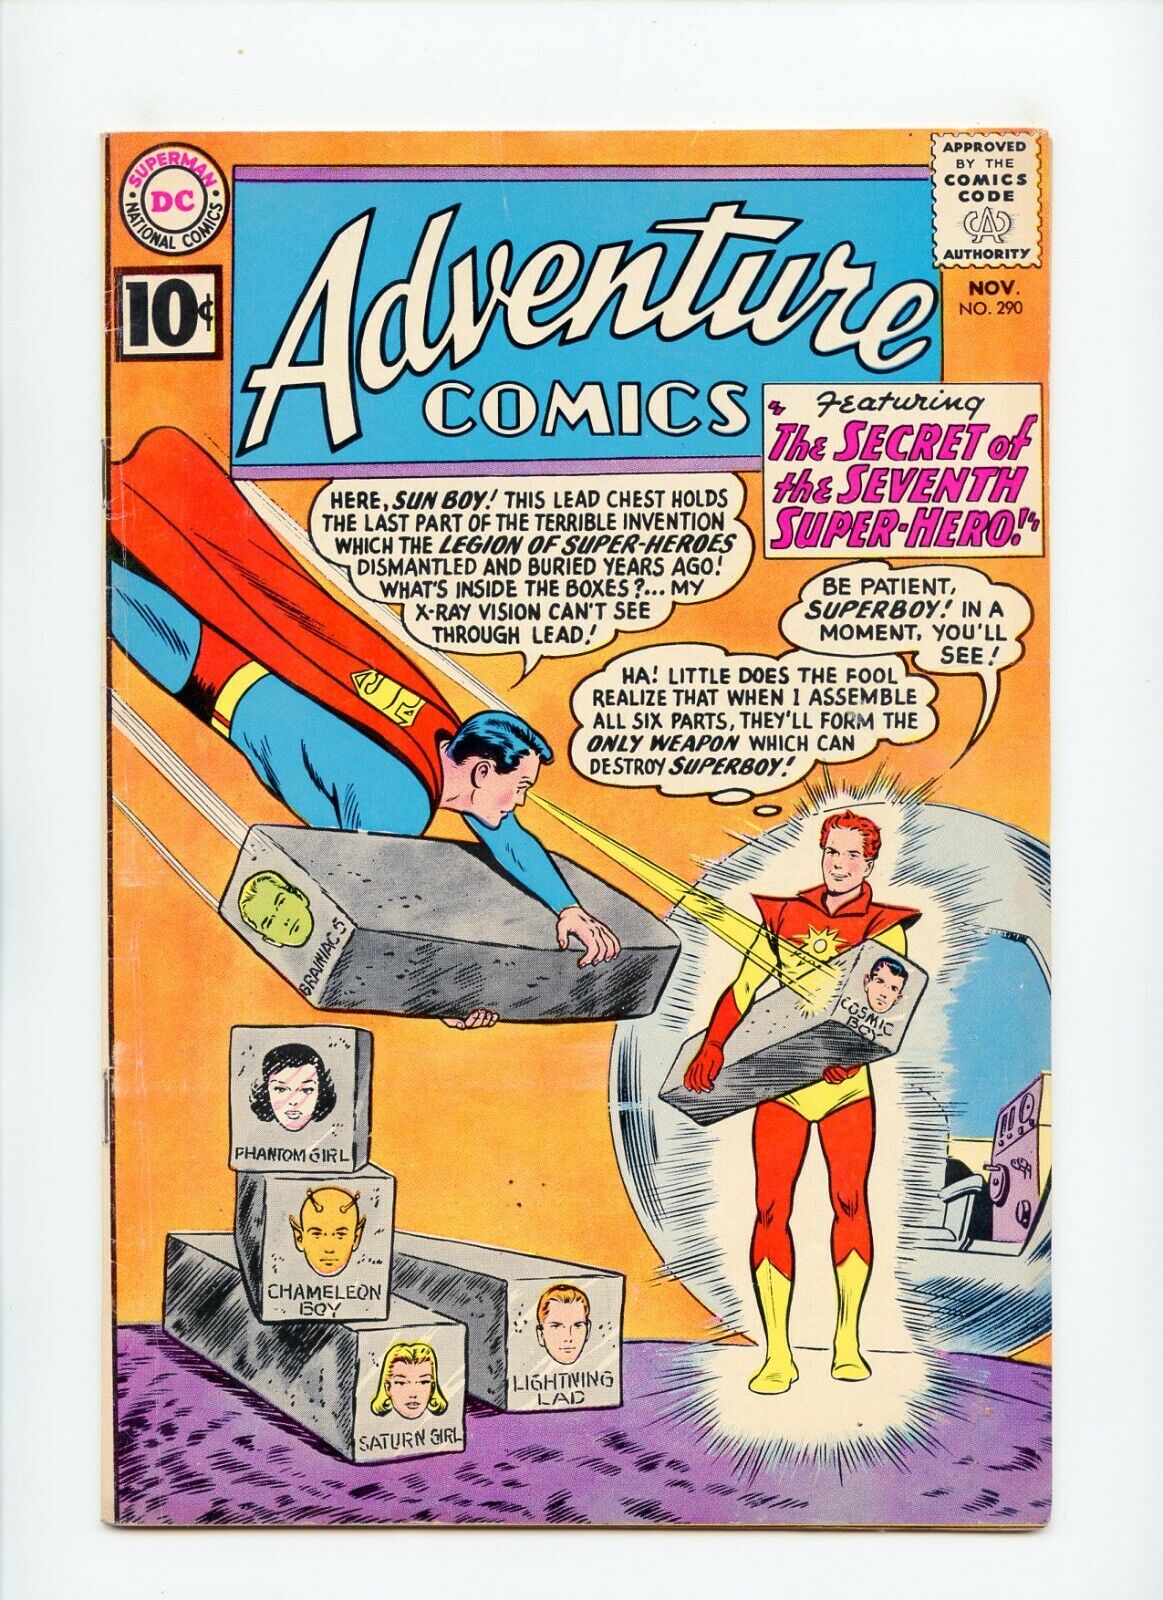 Adventure Comics #290 DC Comics /**